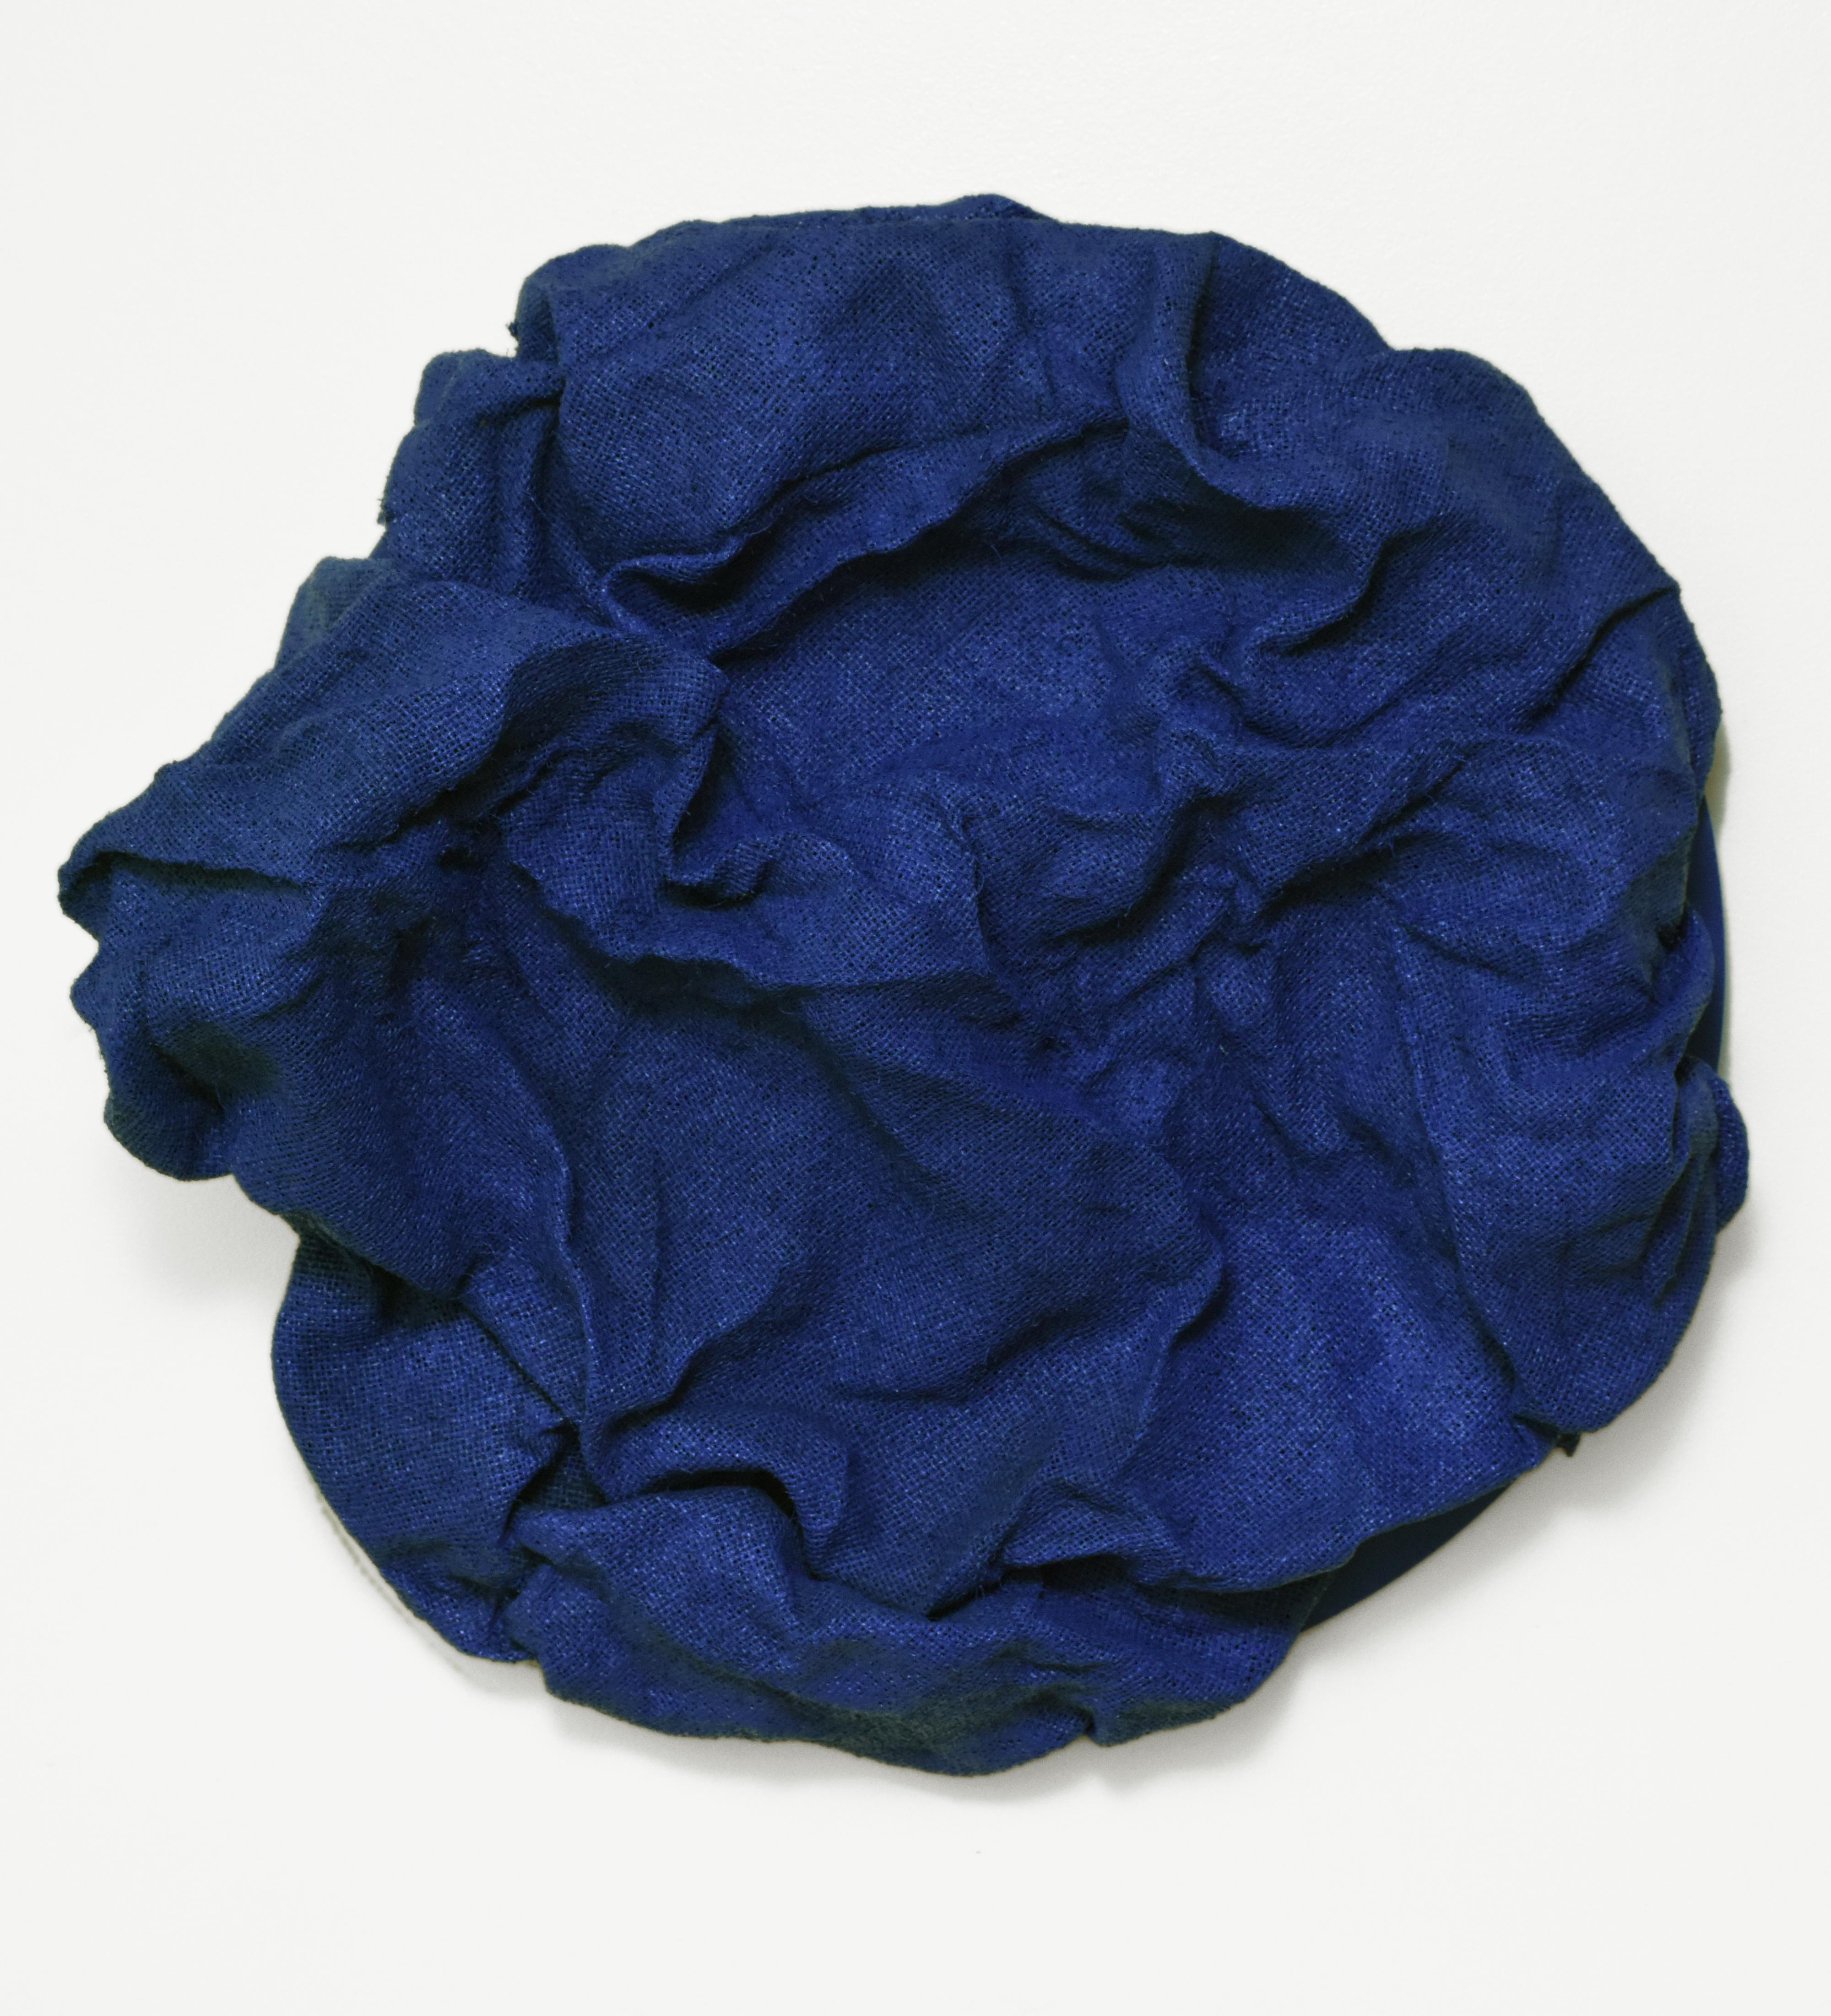 Chloe Hedden Abstract Sculpture - "Iris Blue Folds" Wall sculpture- fabric, monochrome, monochromatic, Klein navy